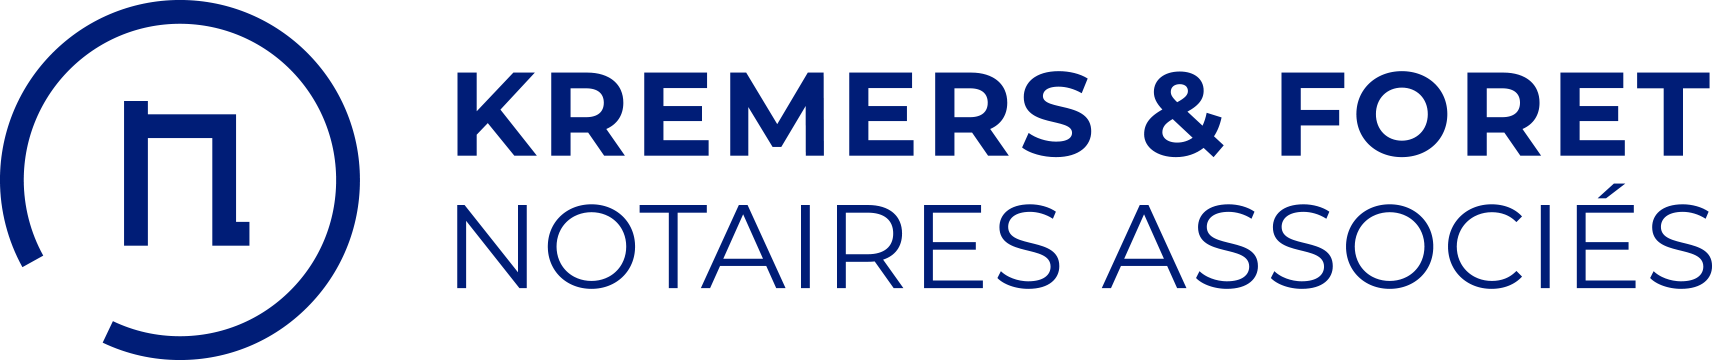 KREMERS & FORET - Étude notariale à Liège